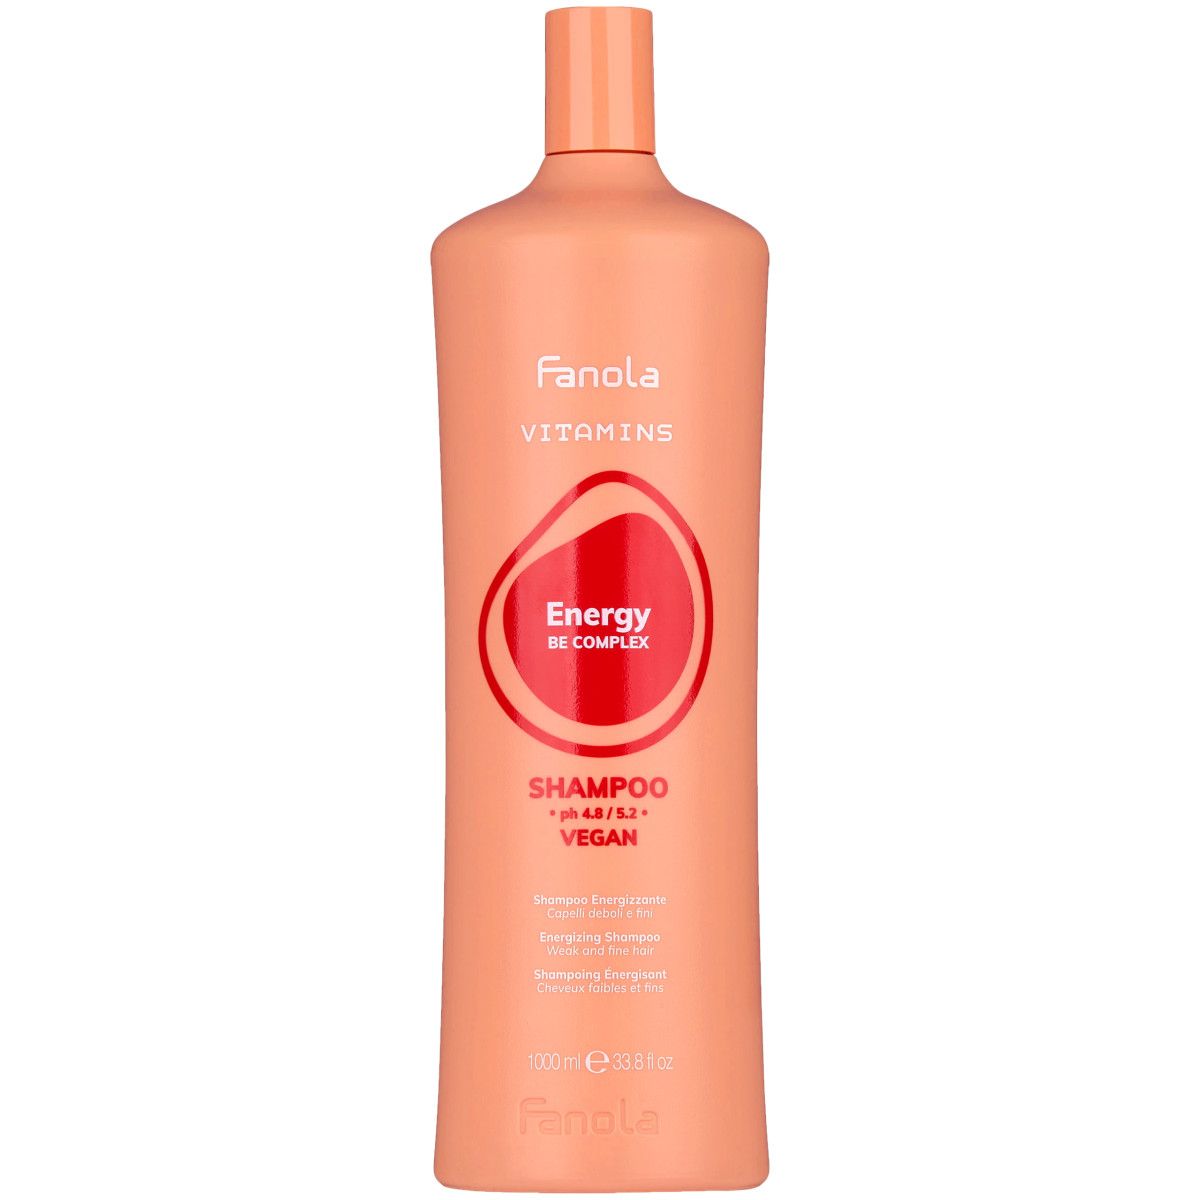 Fanola Vitamins Energy Szampon - szampon energetyzujący do włosów osłabionych, 1000ml